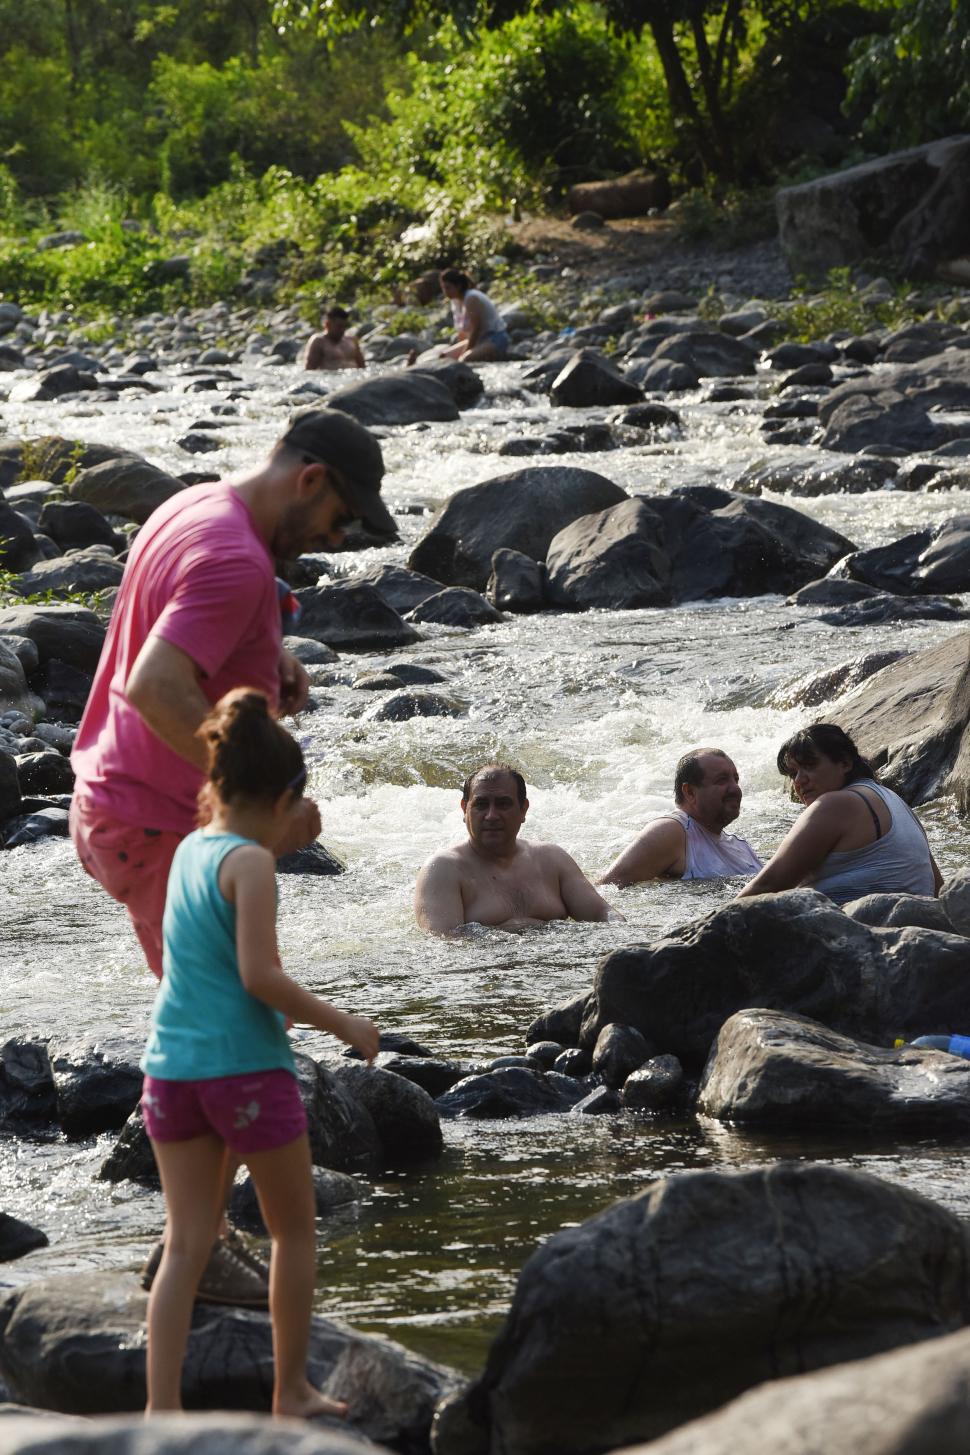 EN FAMILIA. Un padre ayuda a su hija a caminar entre las piedras y la corriente del río. Detrás, tres adultos los observan y enfrían sus cuerpos sumergidos en el agua.